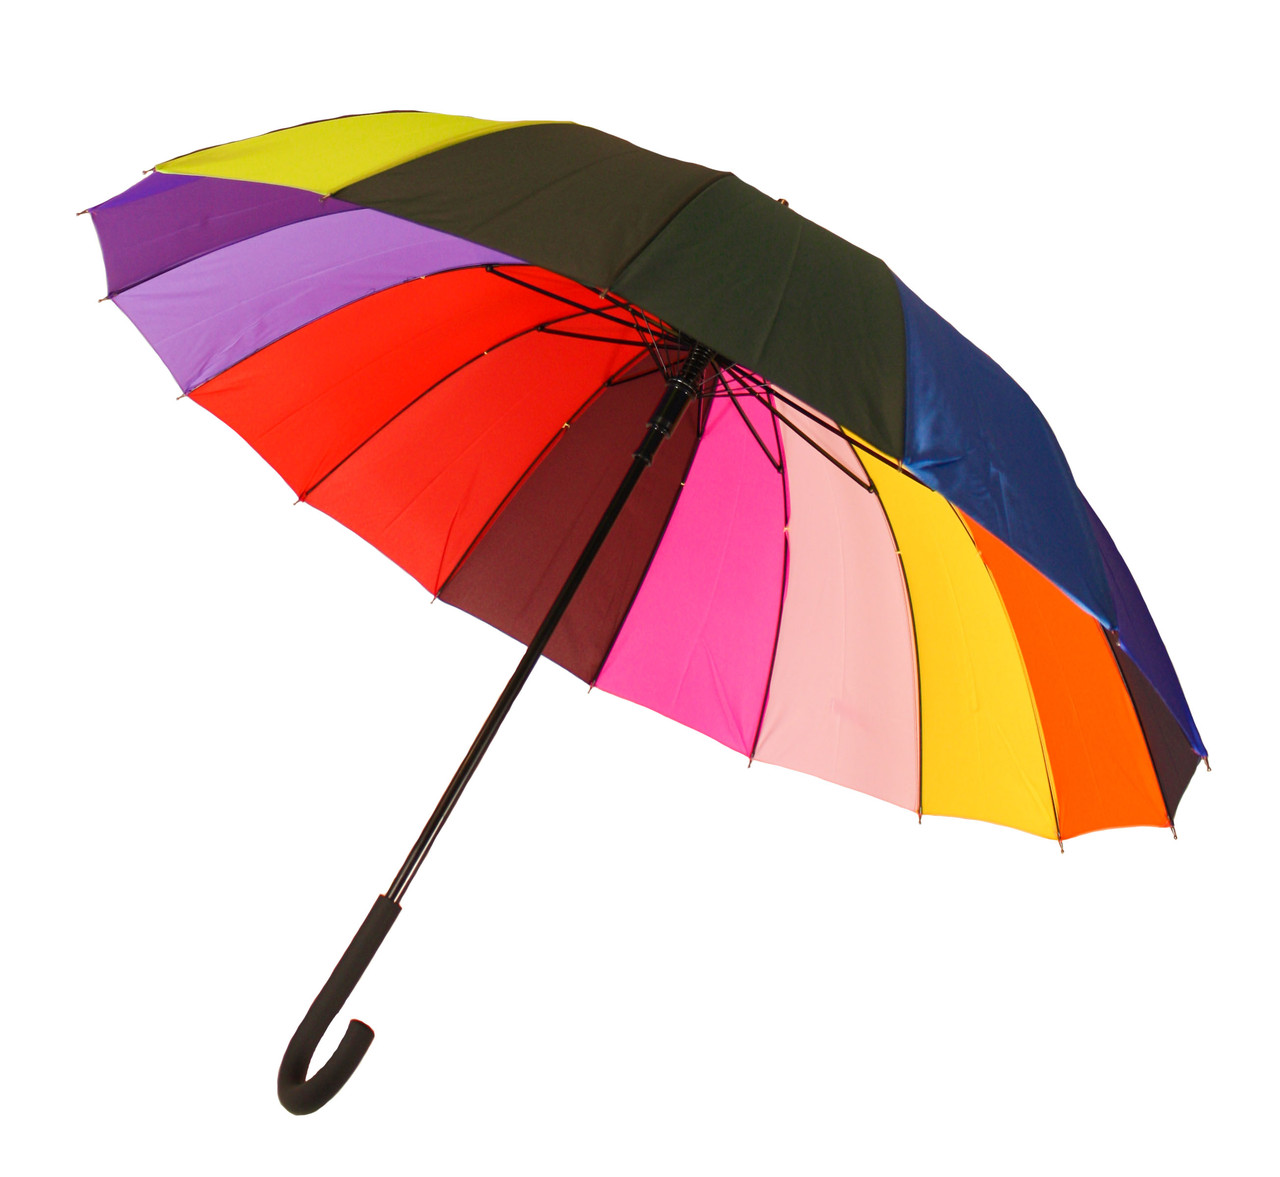 Зонт-трость, полуавтомат, 16 спиц, цвета радугиНет в наличии